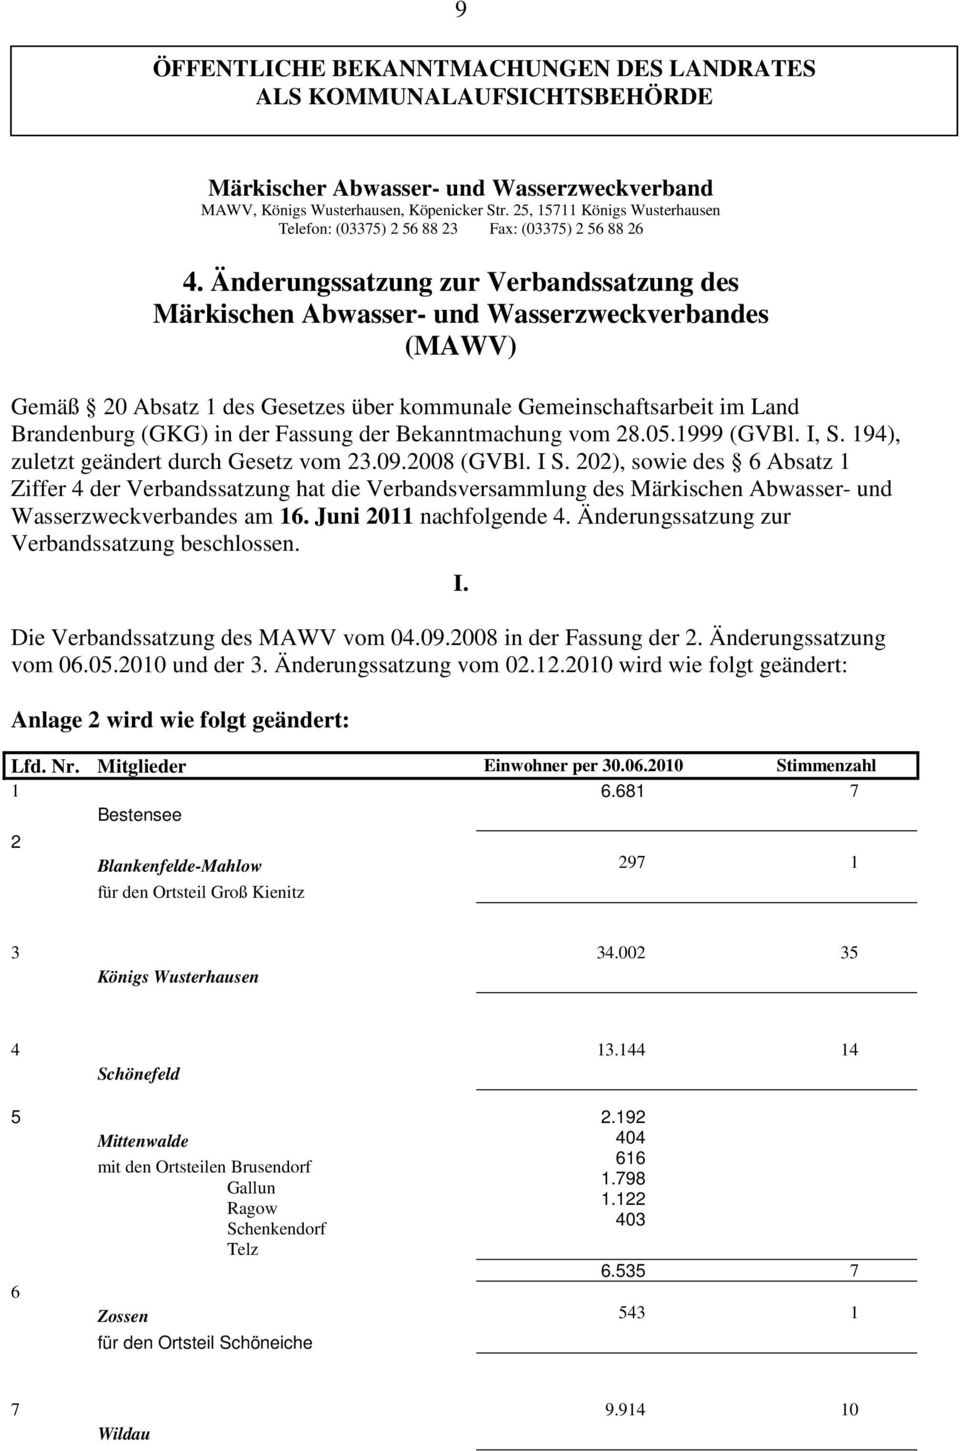 Änderungssatzung zur Verbandssatzung des Märkischen Abwasser- und Wasserzweckverbandes (MAWV) Gemäß 20 Absatz 1 des Gesetzes über kommunale Gemeinschaftsarbeit im Land Brandenburg (GKG) in der